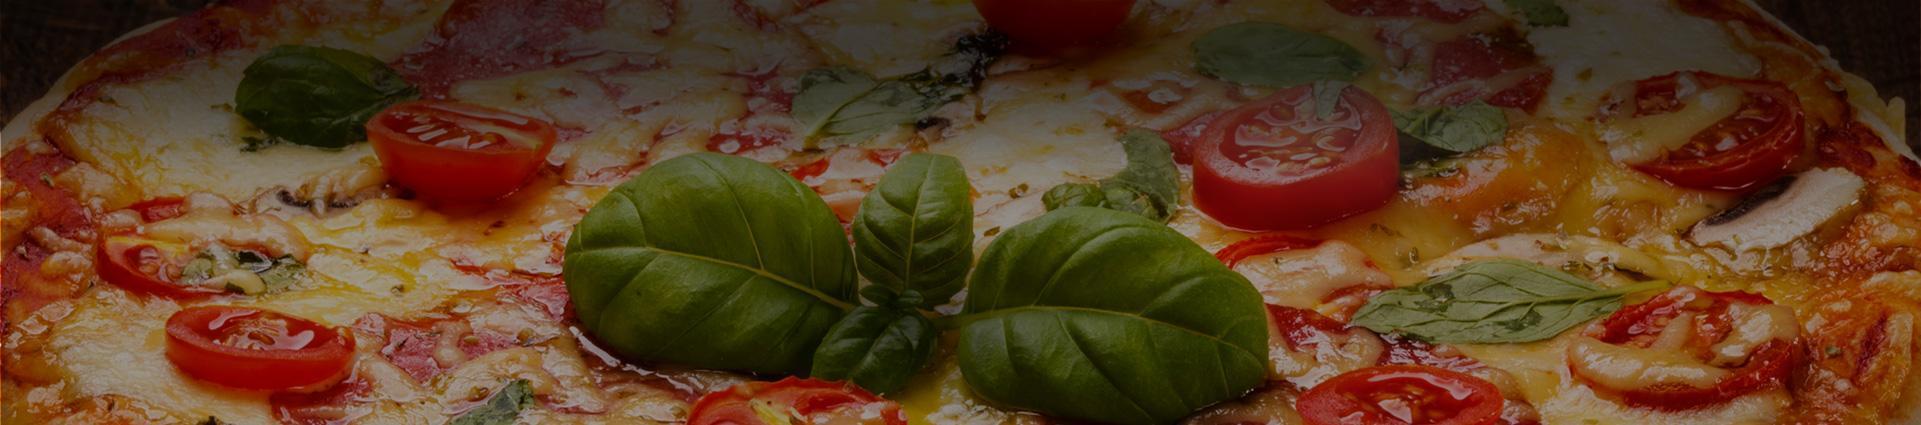 pizza z pomidorami i bazylią - Banner w kontakcie